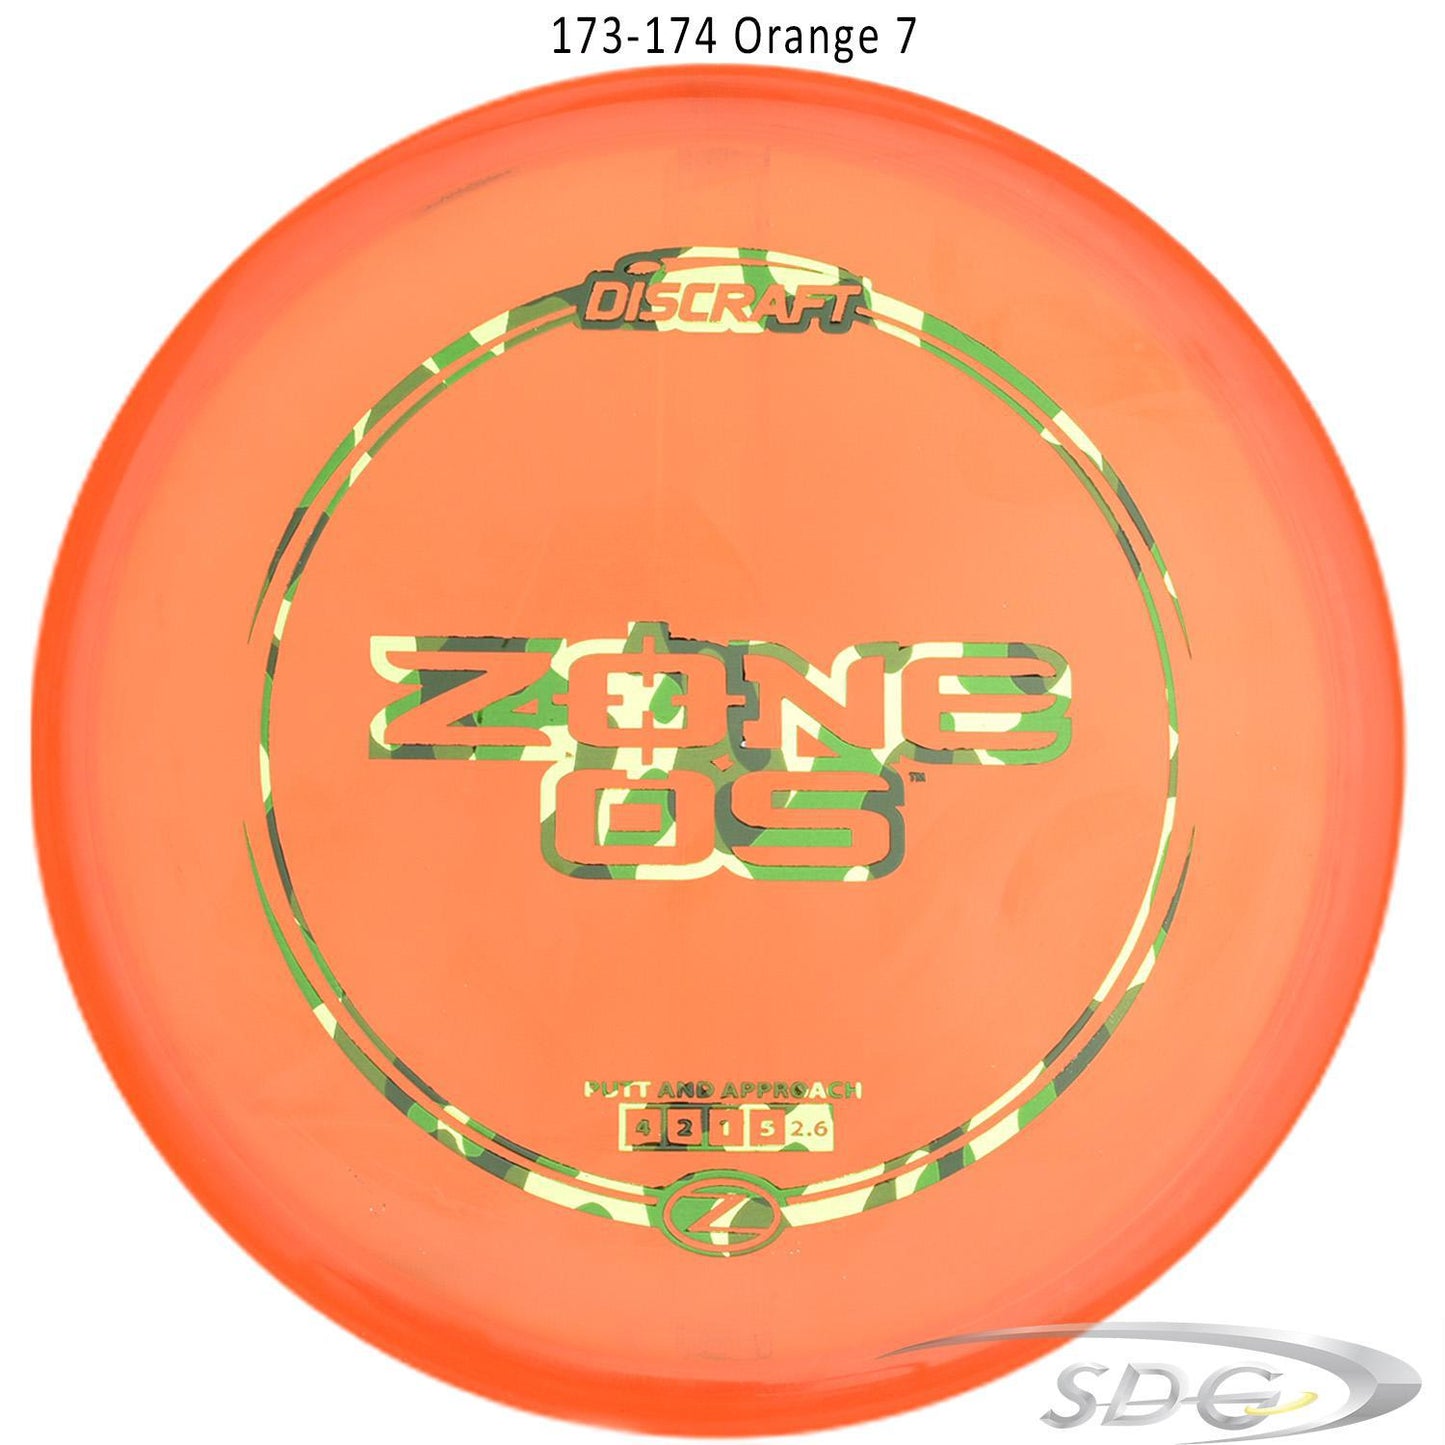 discraft-z-line-zone-os-disc-golf-putter-176-173-weights-1 173-174 Orange 7 